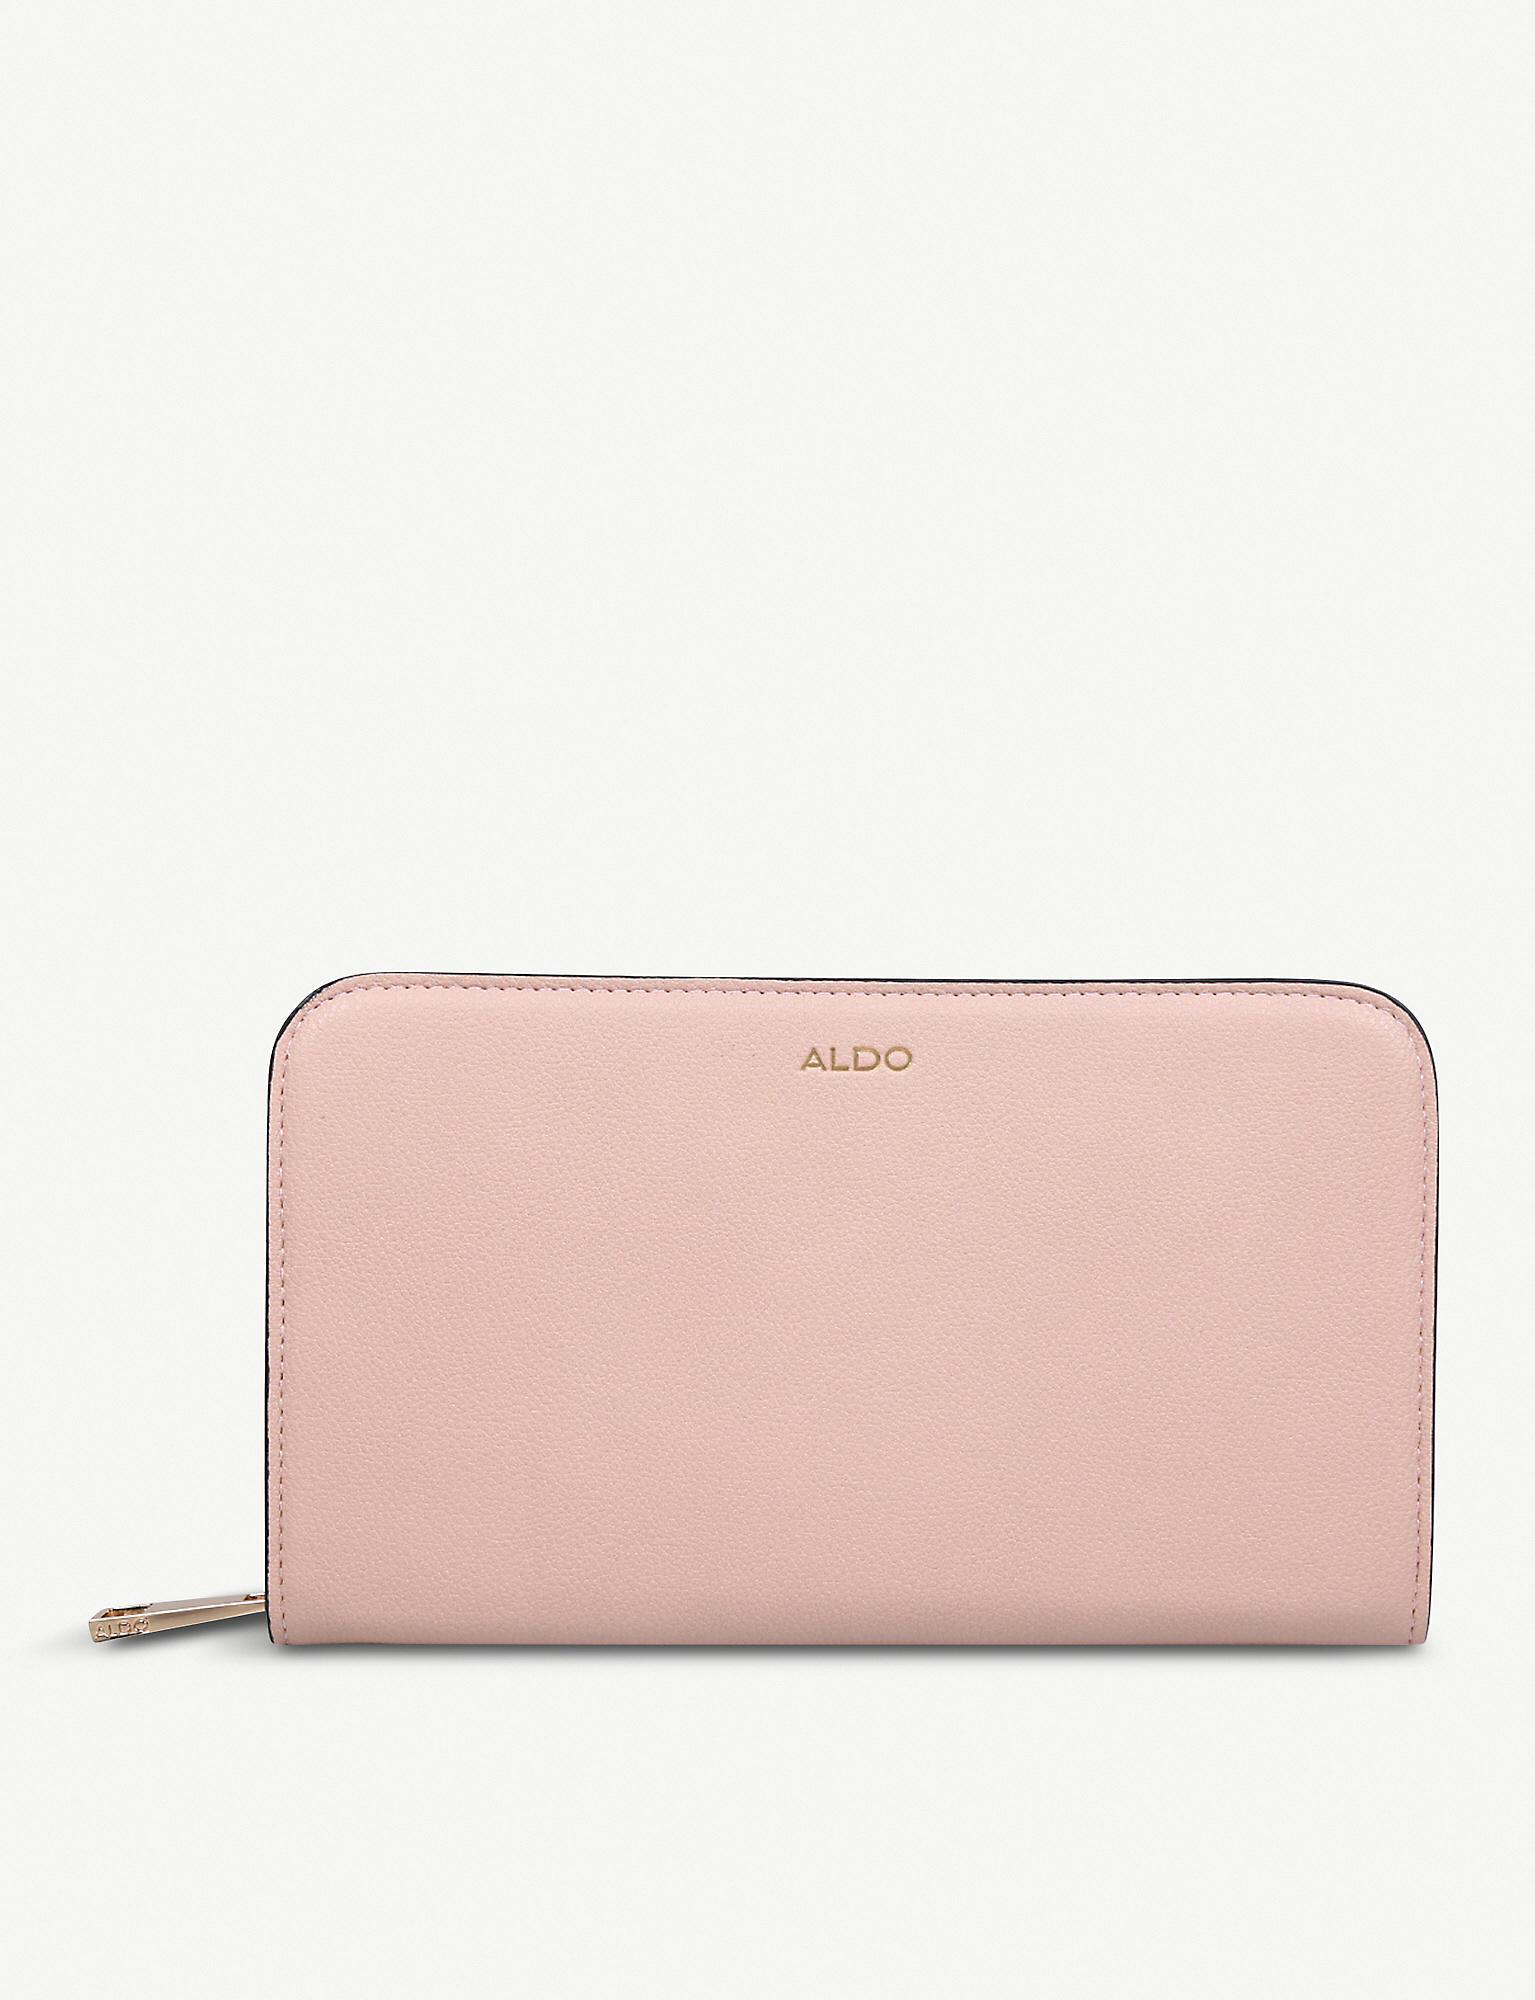 aldo wallet purse